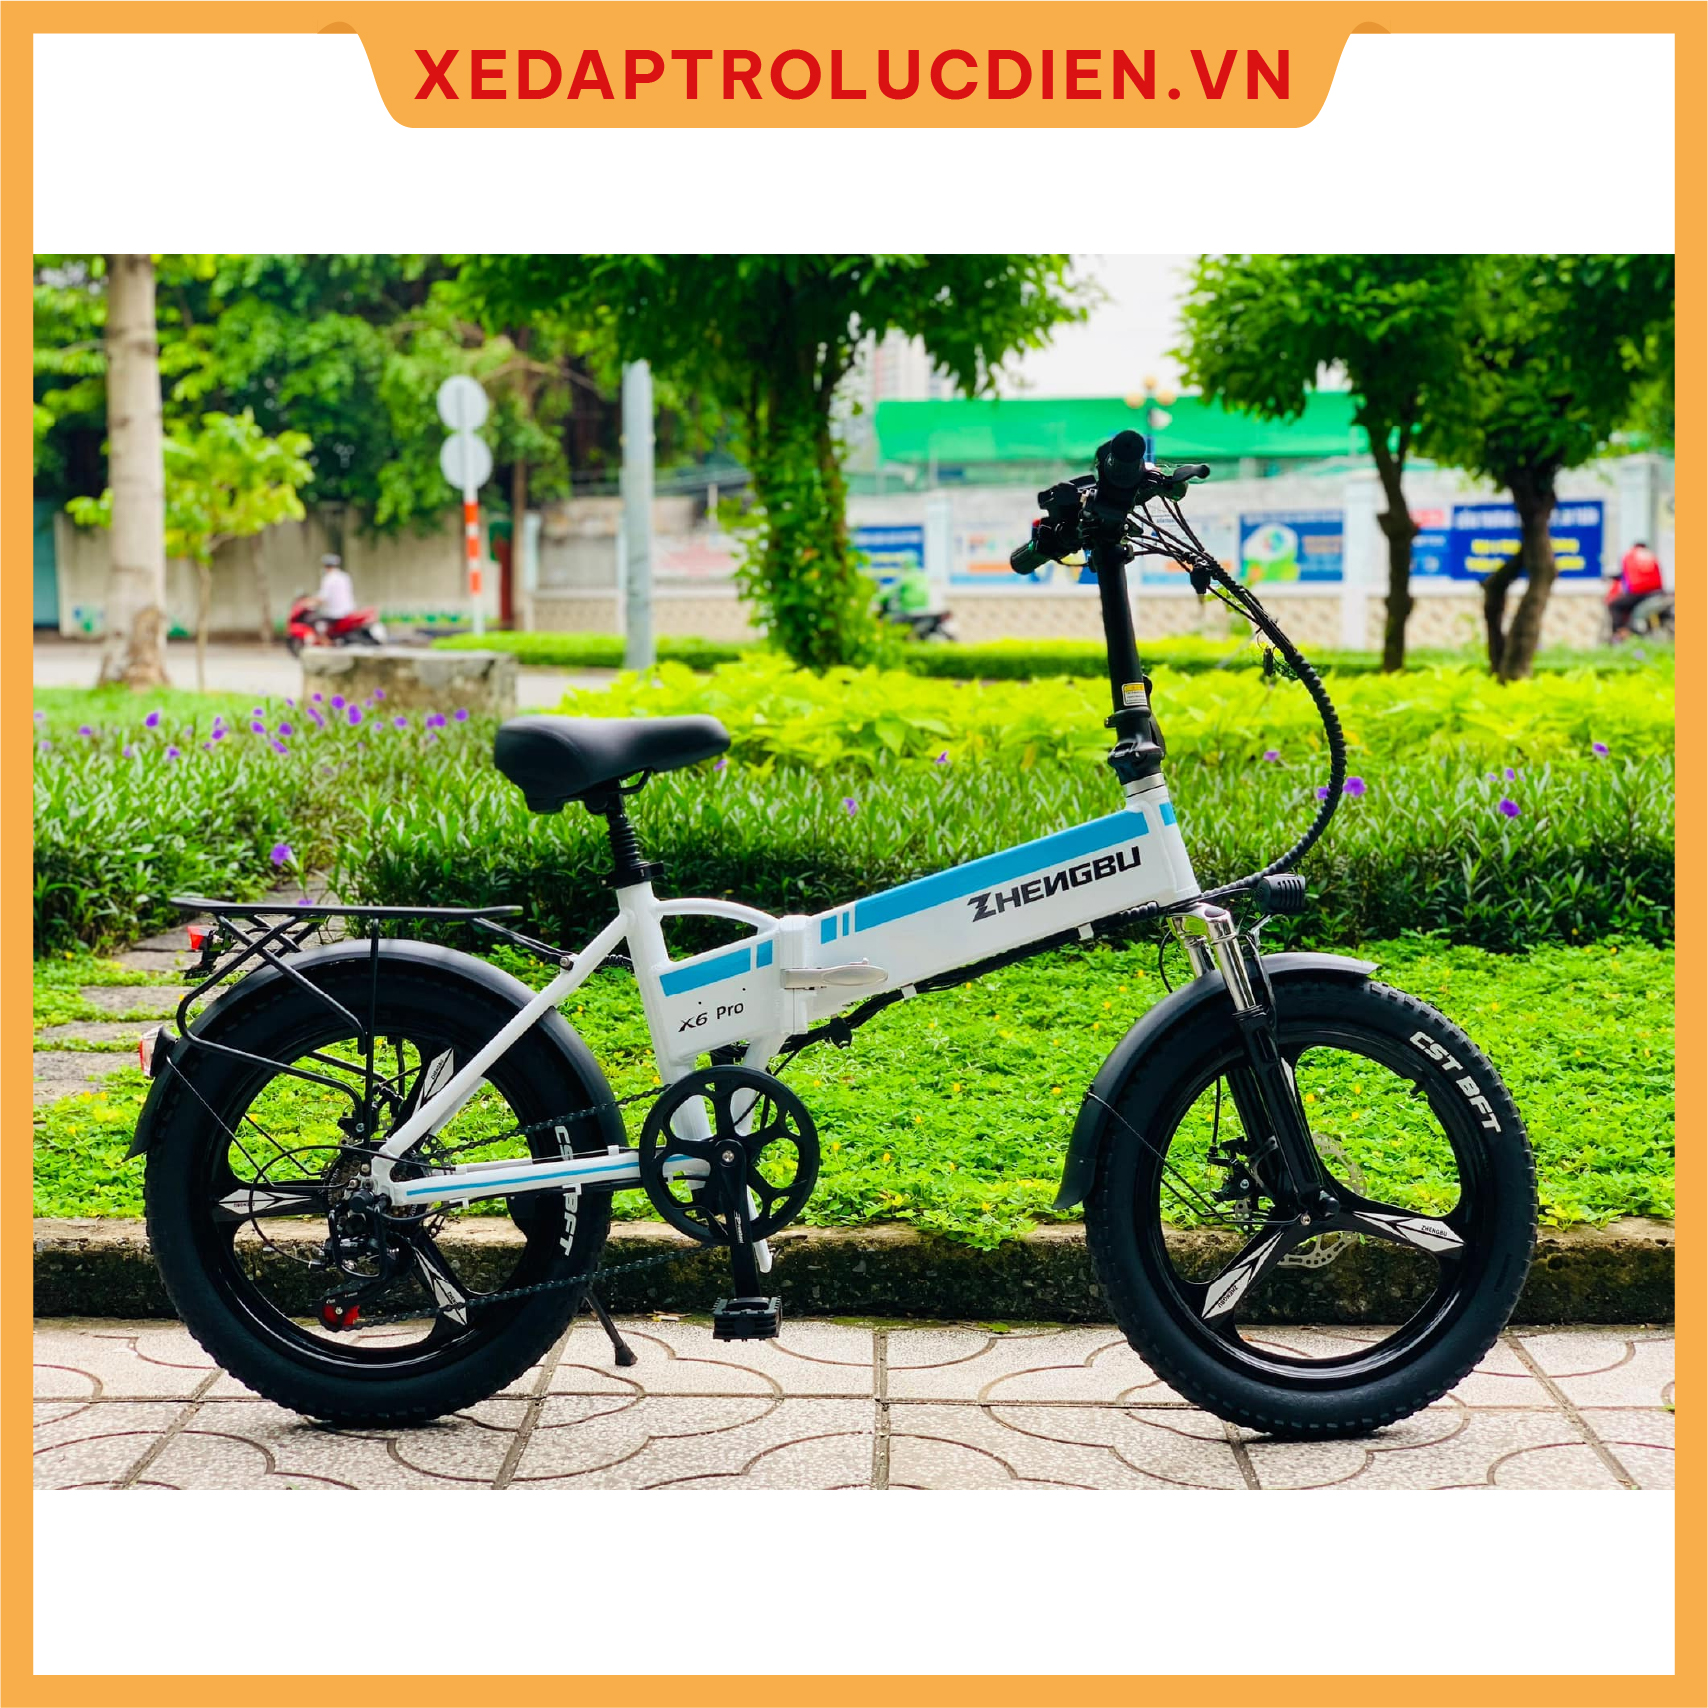 Xe đạp trợ lực điện Zhengbu X6 Pro Giá – Ưu đãi – Dịch vụ tốt nhất